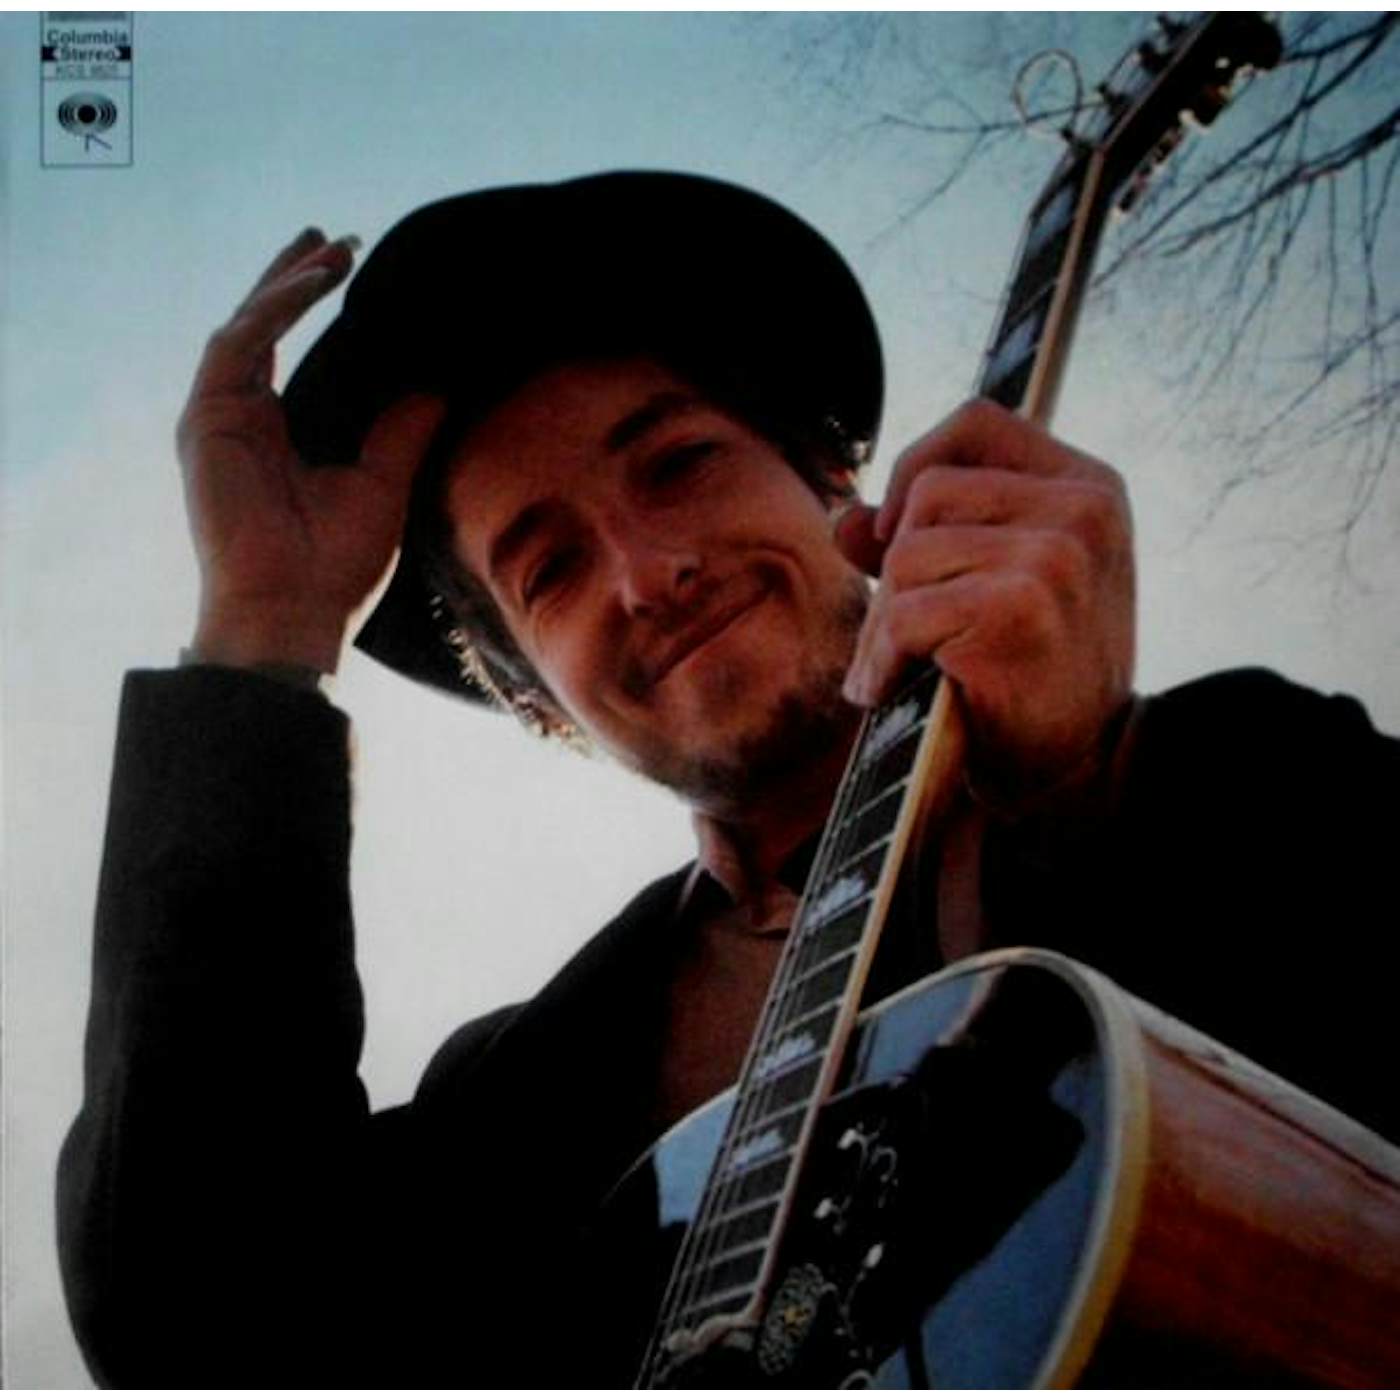 Bob Dylan NASHVILLE SKYLINE Vinyl Record